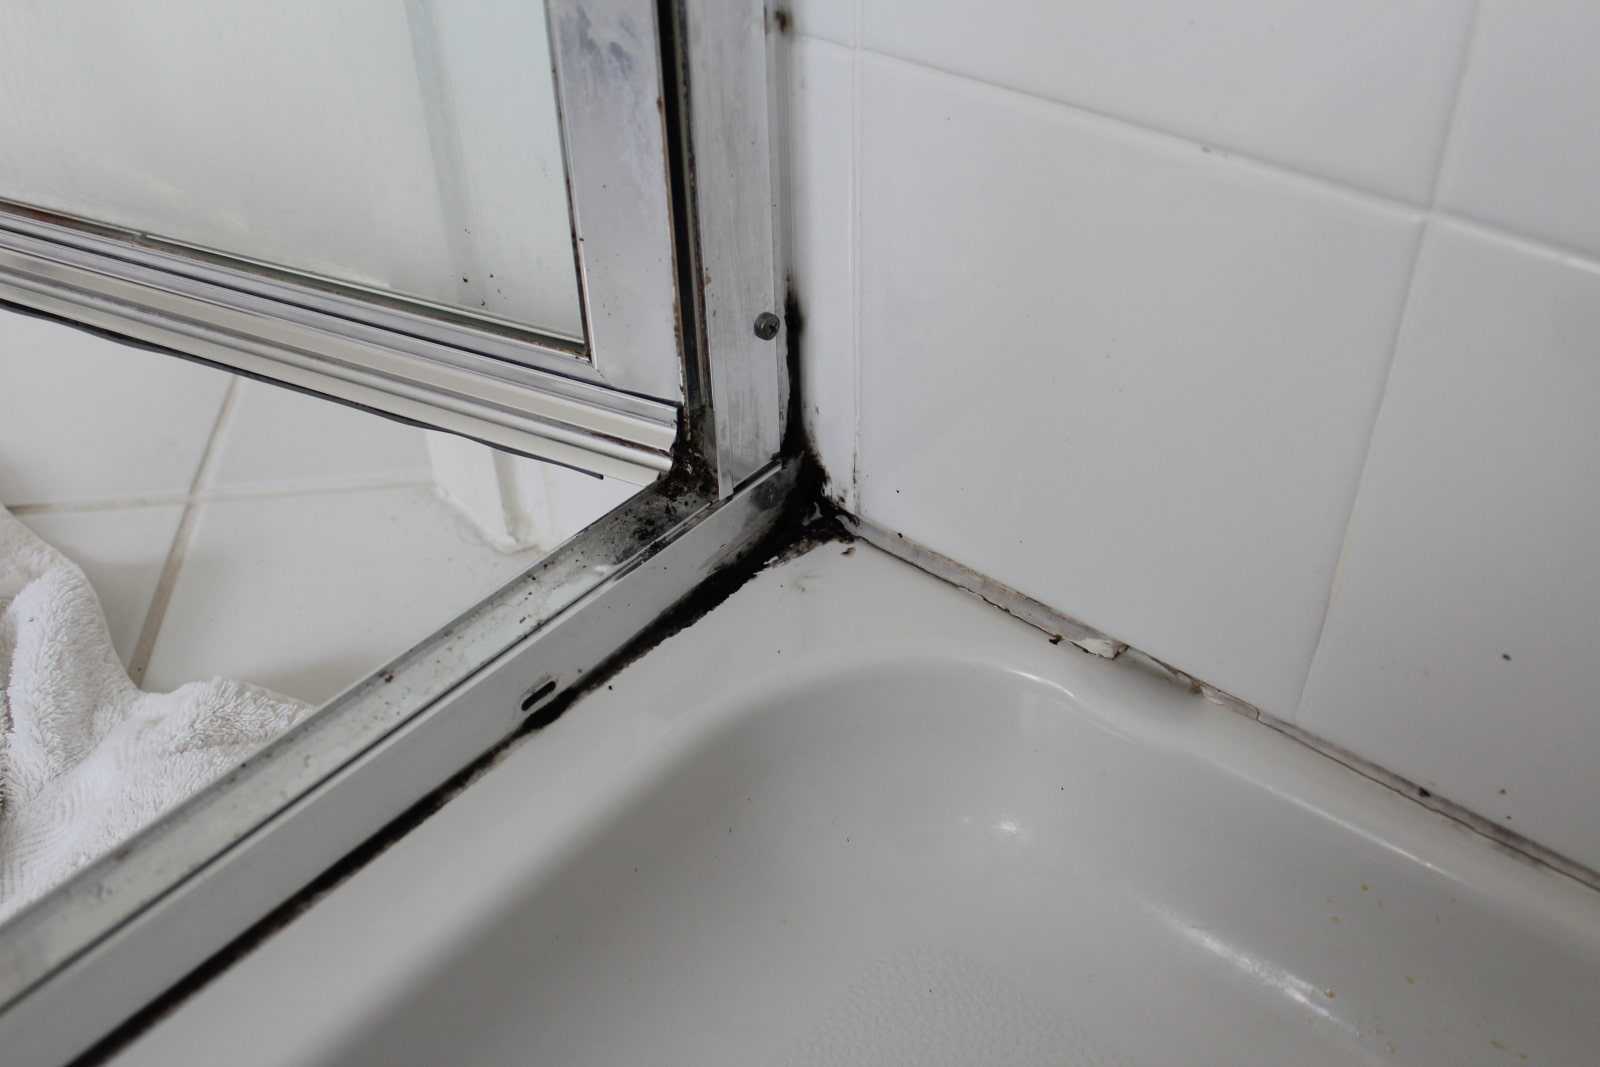 Плесень в ванной: избавляемся от напасти в домашних условиях